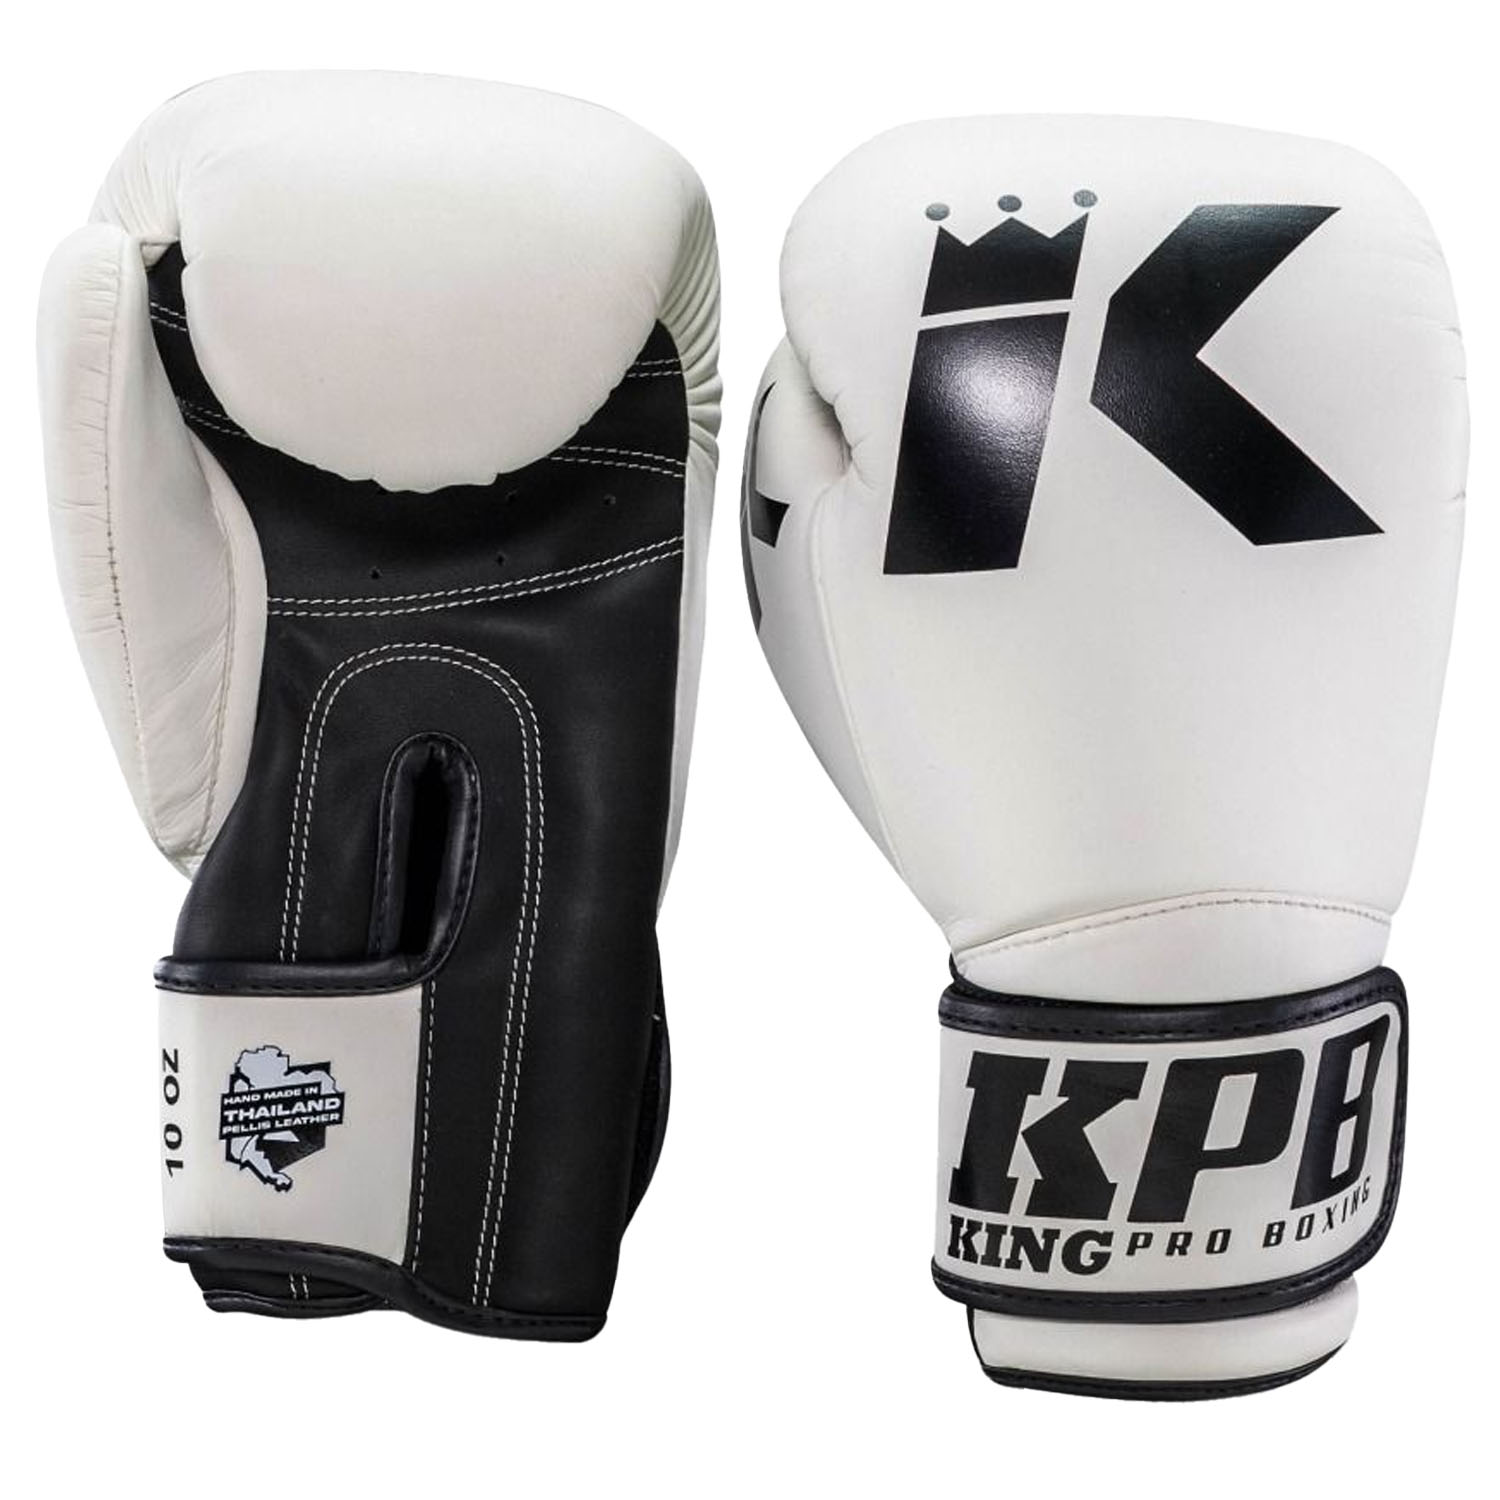 KING PRO BOXING Boxing Gloves, BGK 2, white, 14 Oz